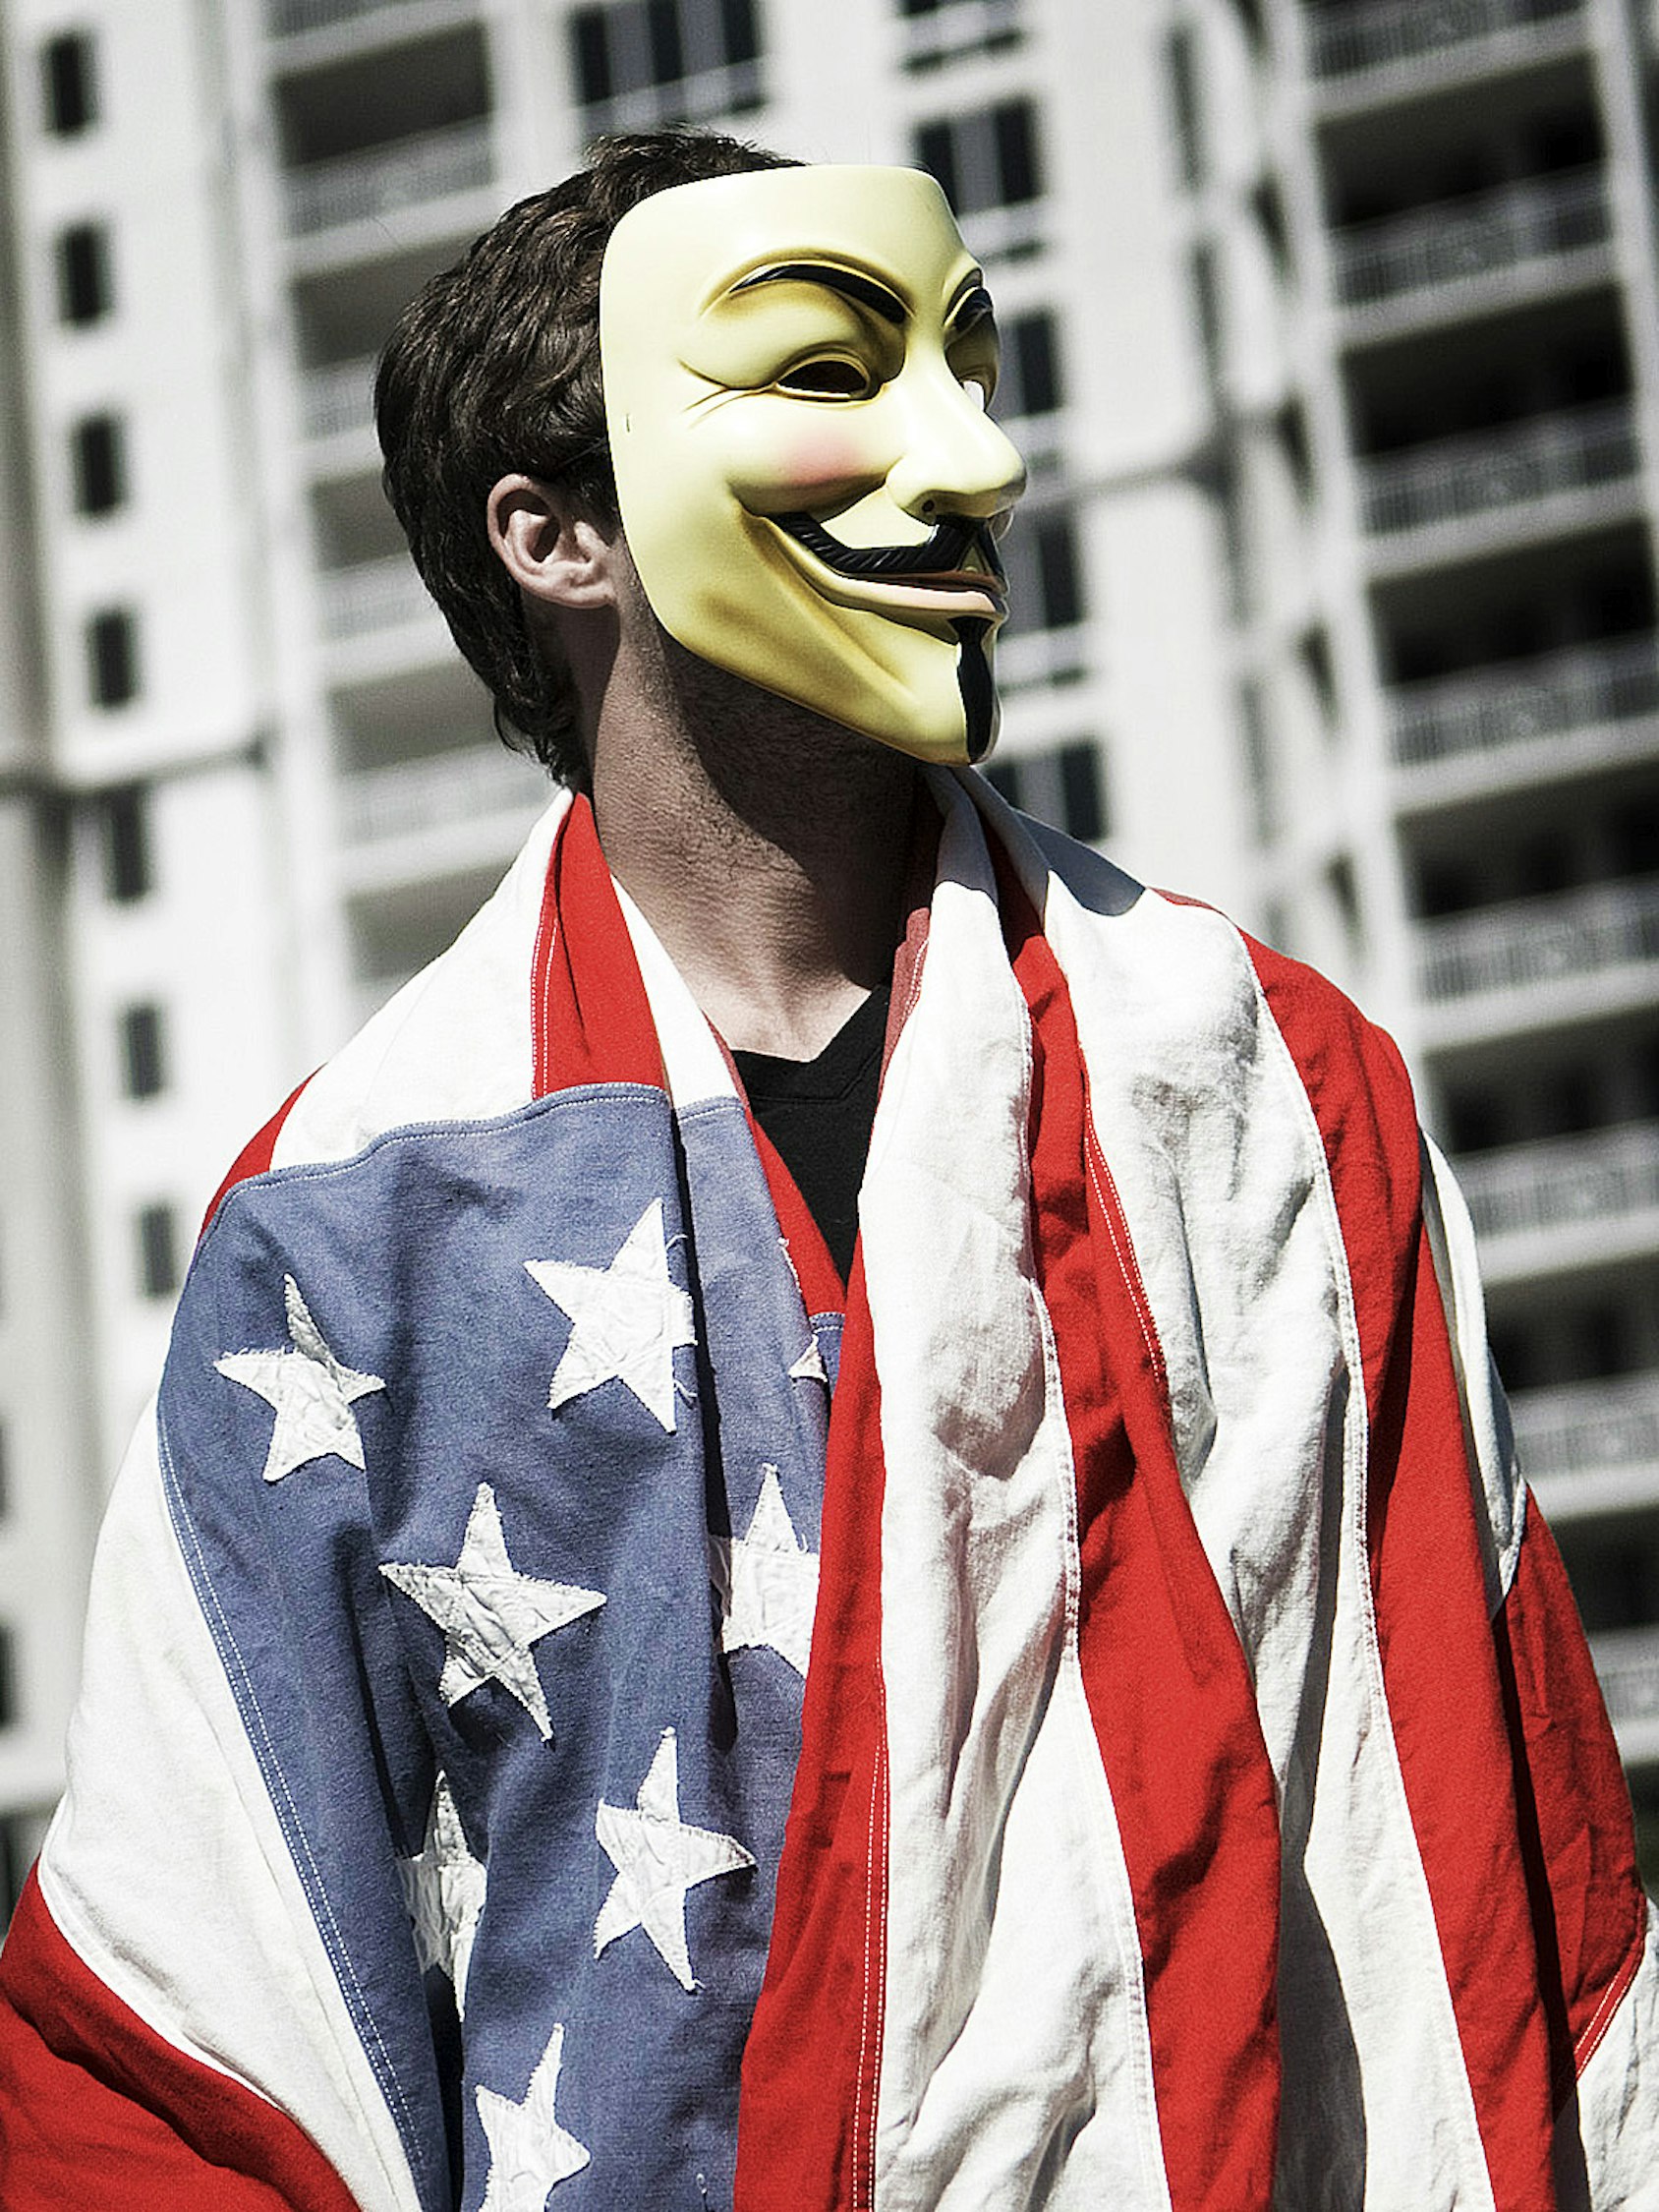 Человек в маске шоу. Человек в маске. Американец в маске. Американская маска. Популярные маски.